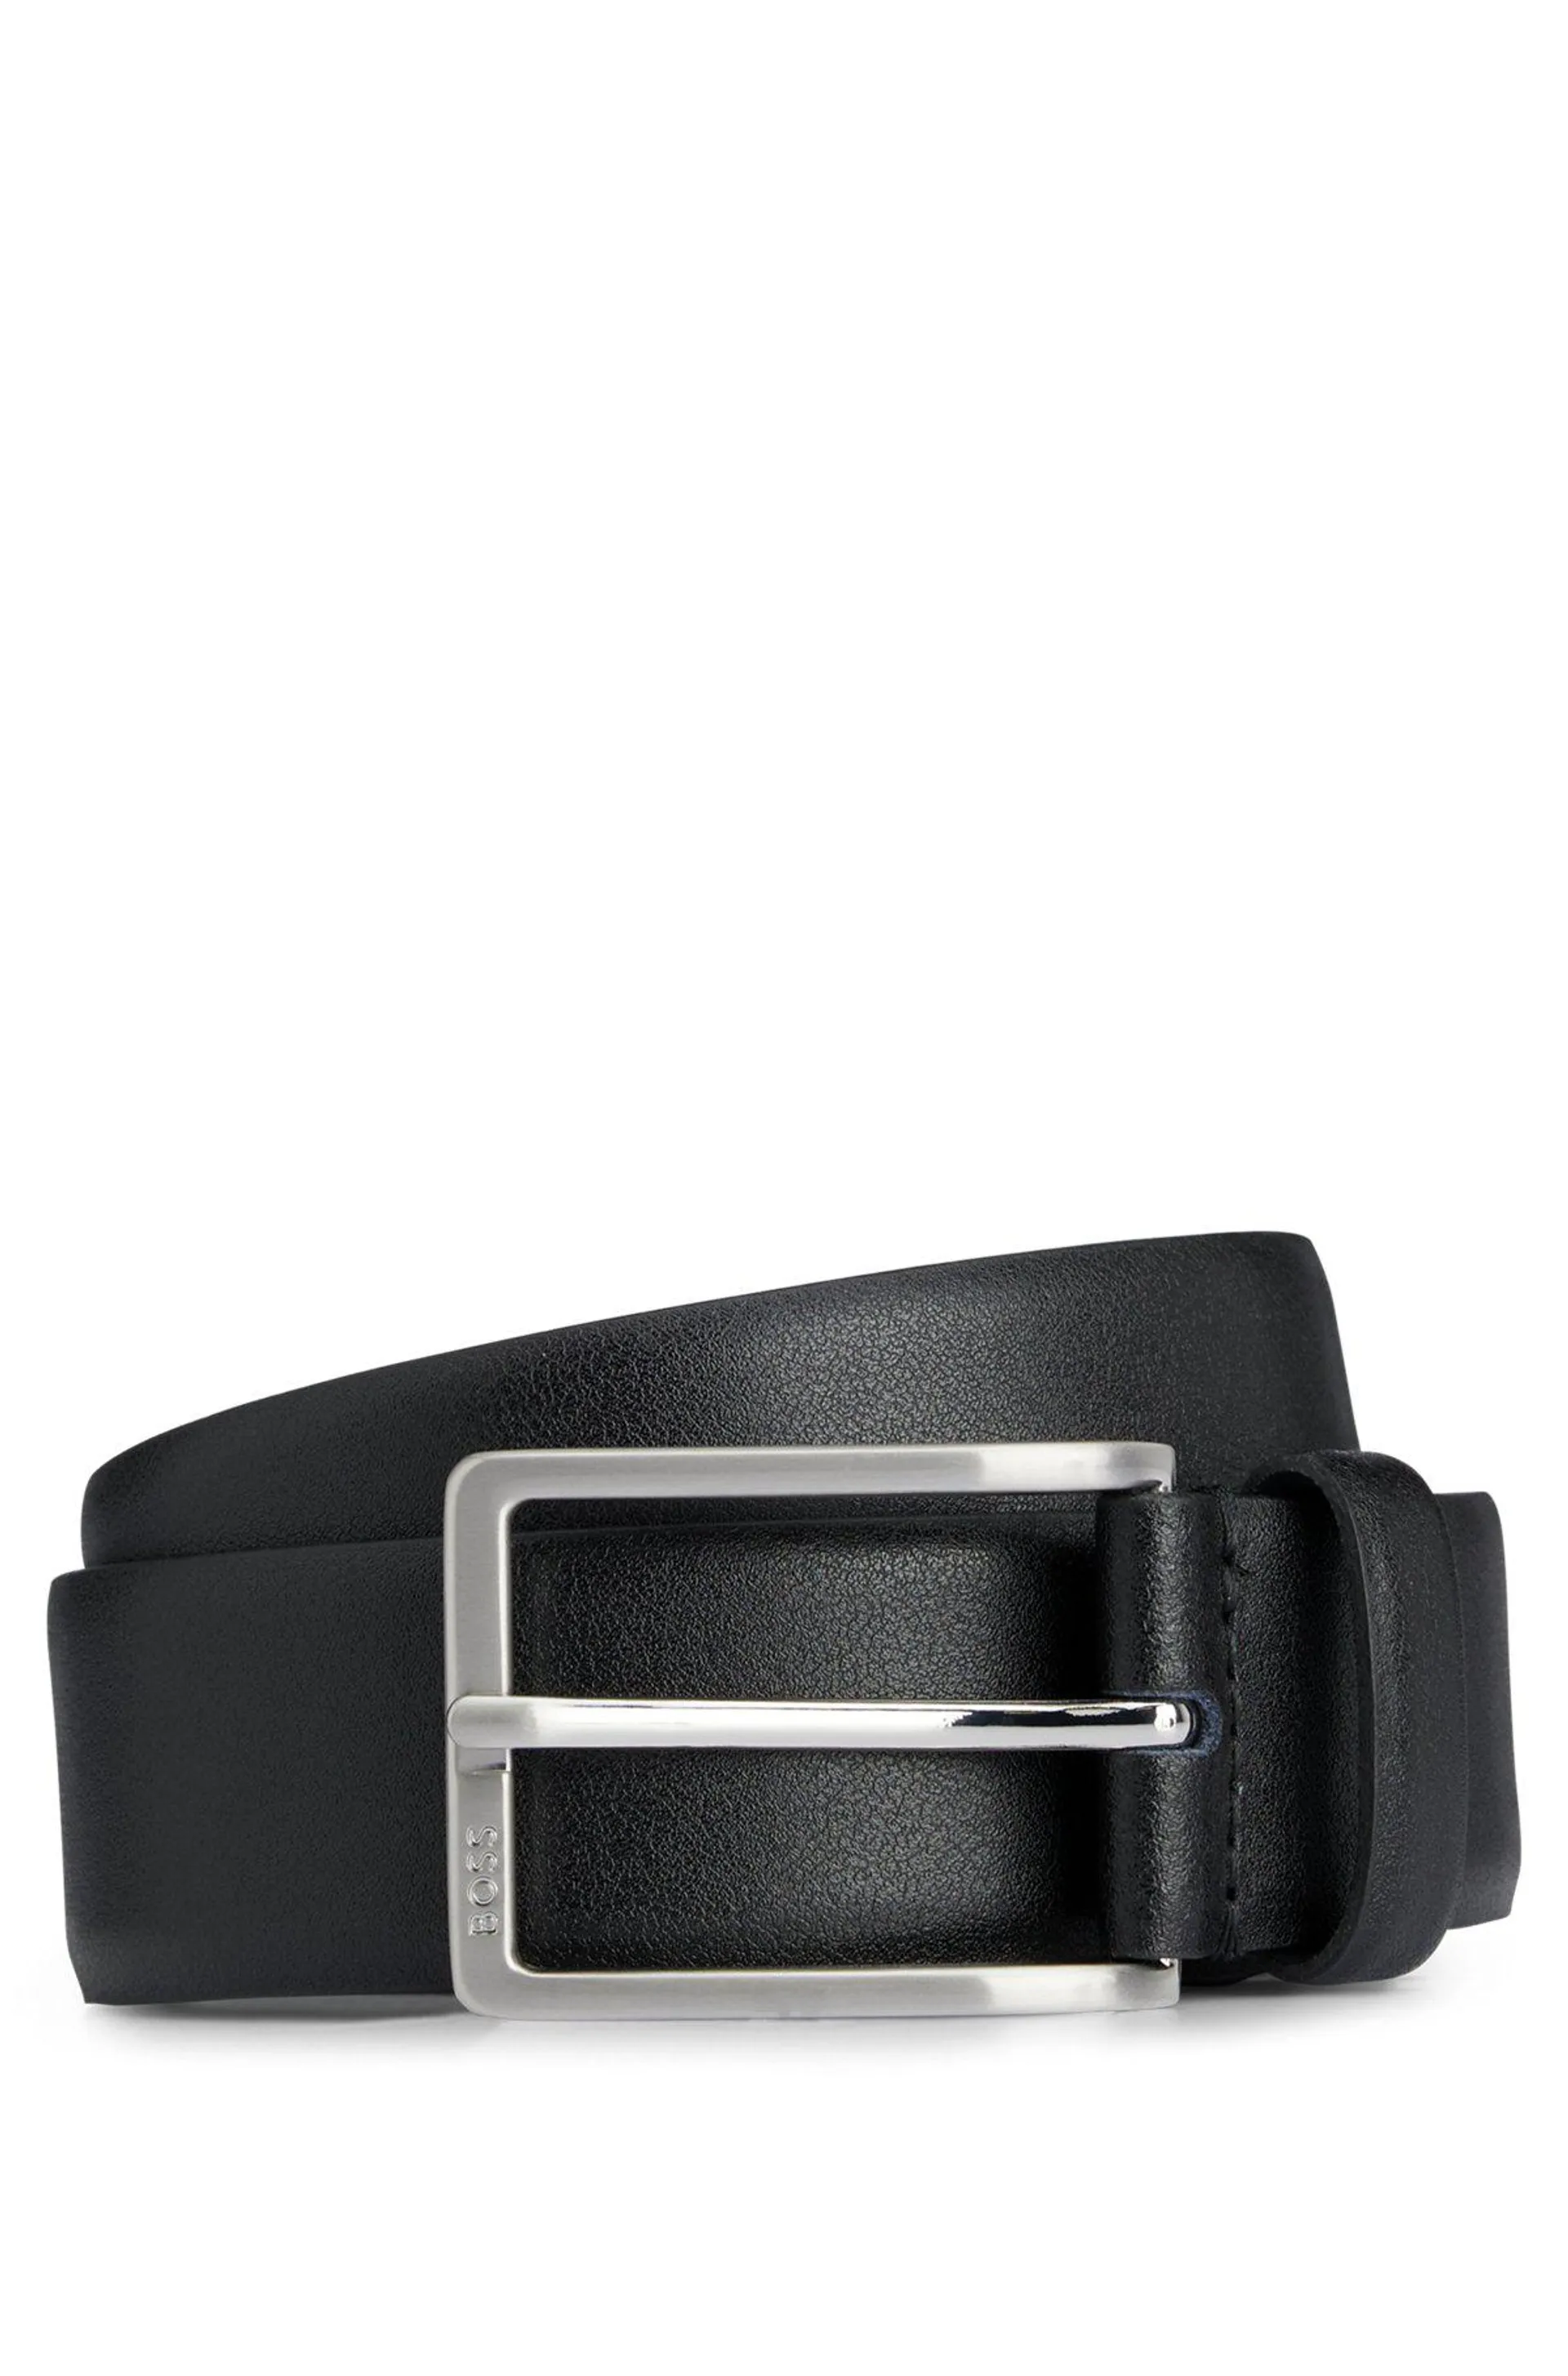 Cinturón de piel italiana con hebilla con logo grabado